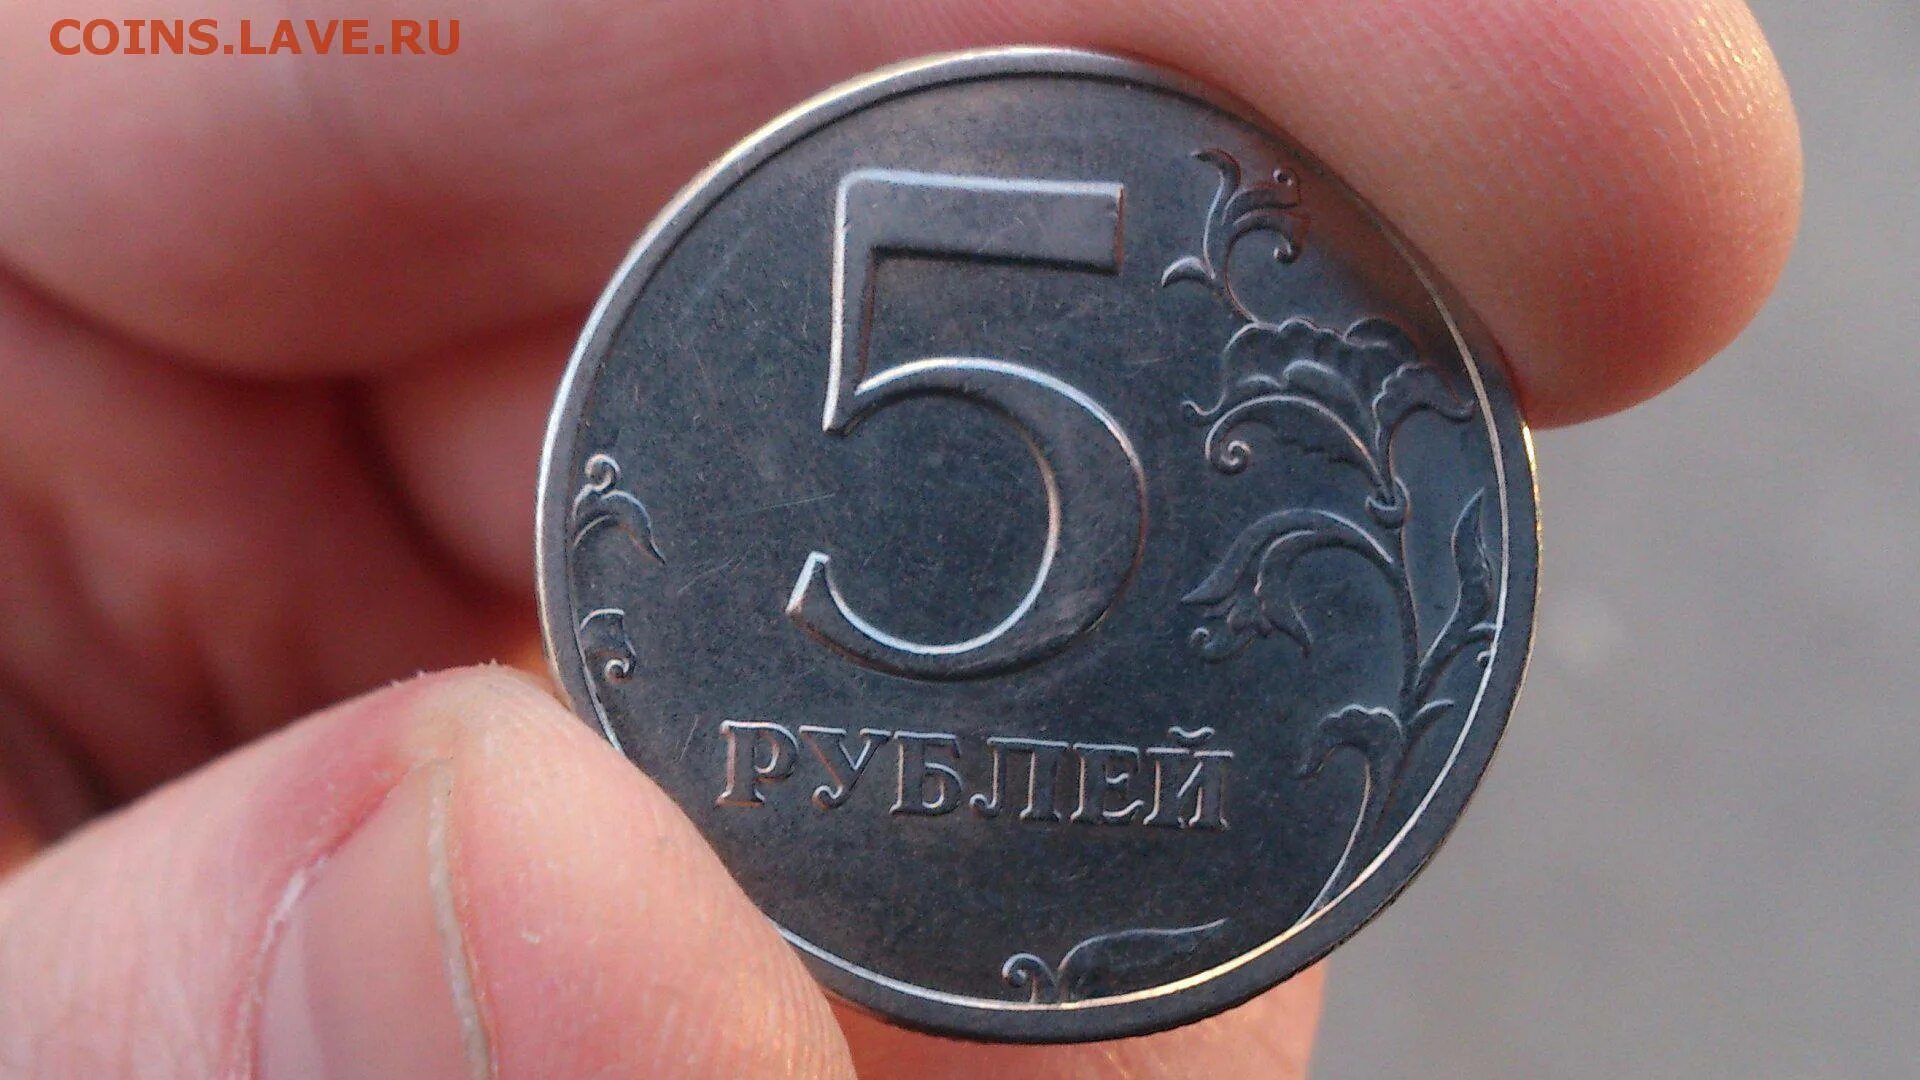 5 рублей на кошелек. Монеты. Монеты рубли. Монета 5 рублей в руке. Монетка 5 рублей.